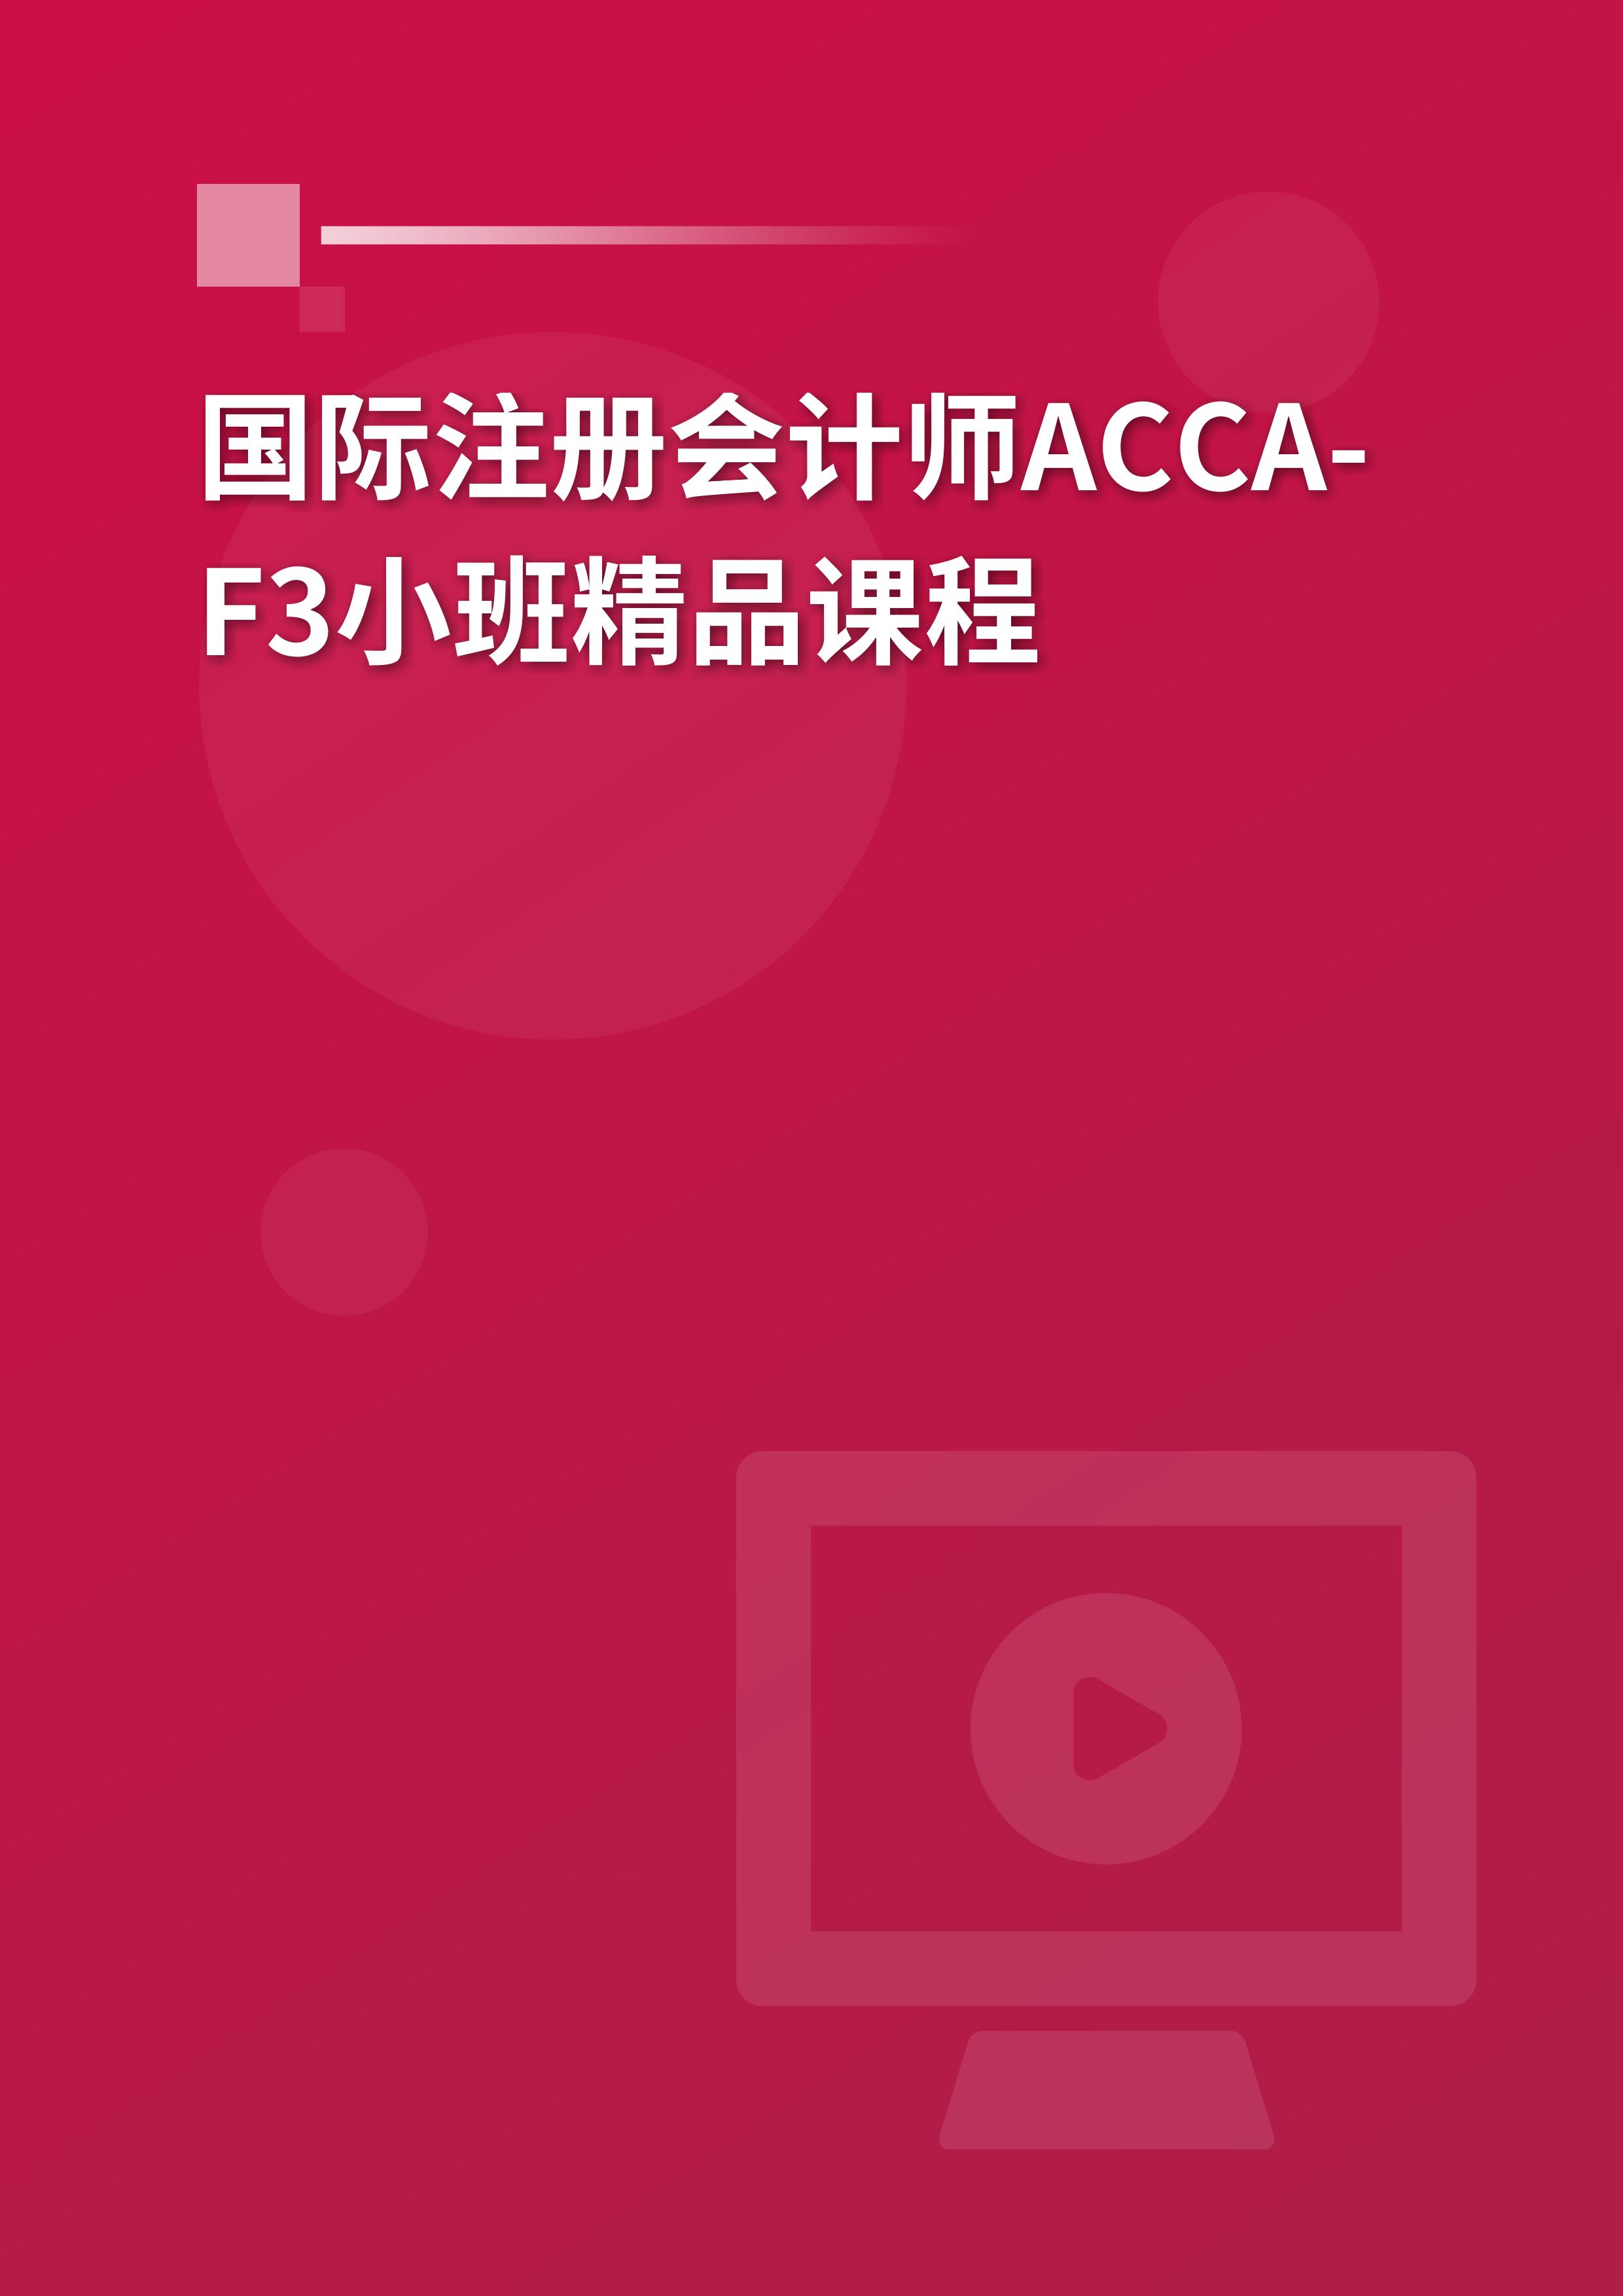 国际注册会计师ACCA-F3小班精品课程